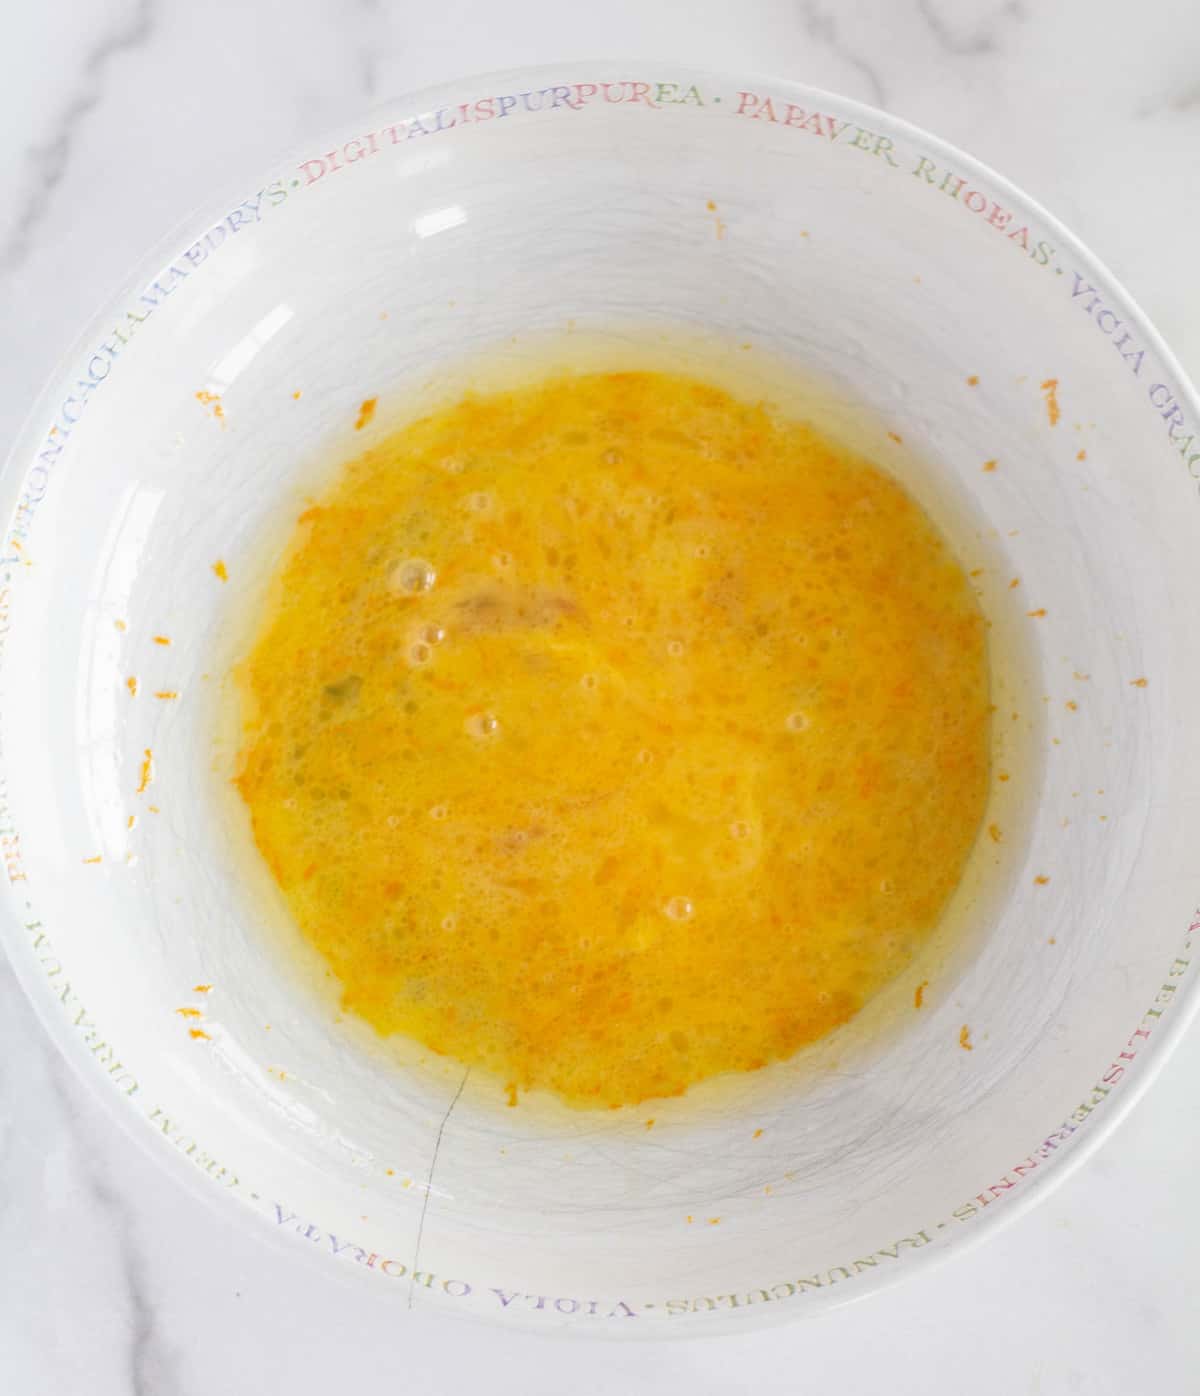 wet ingredients in white mixing bowl